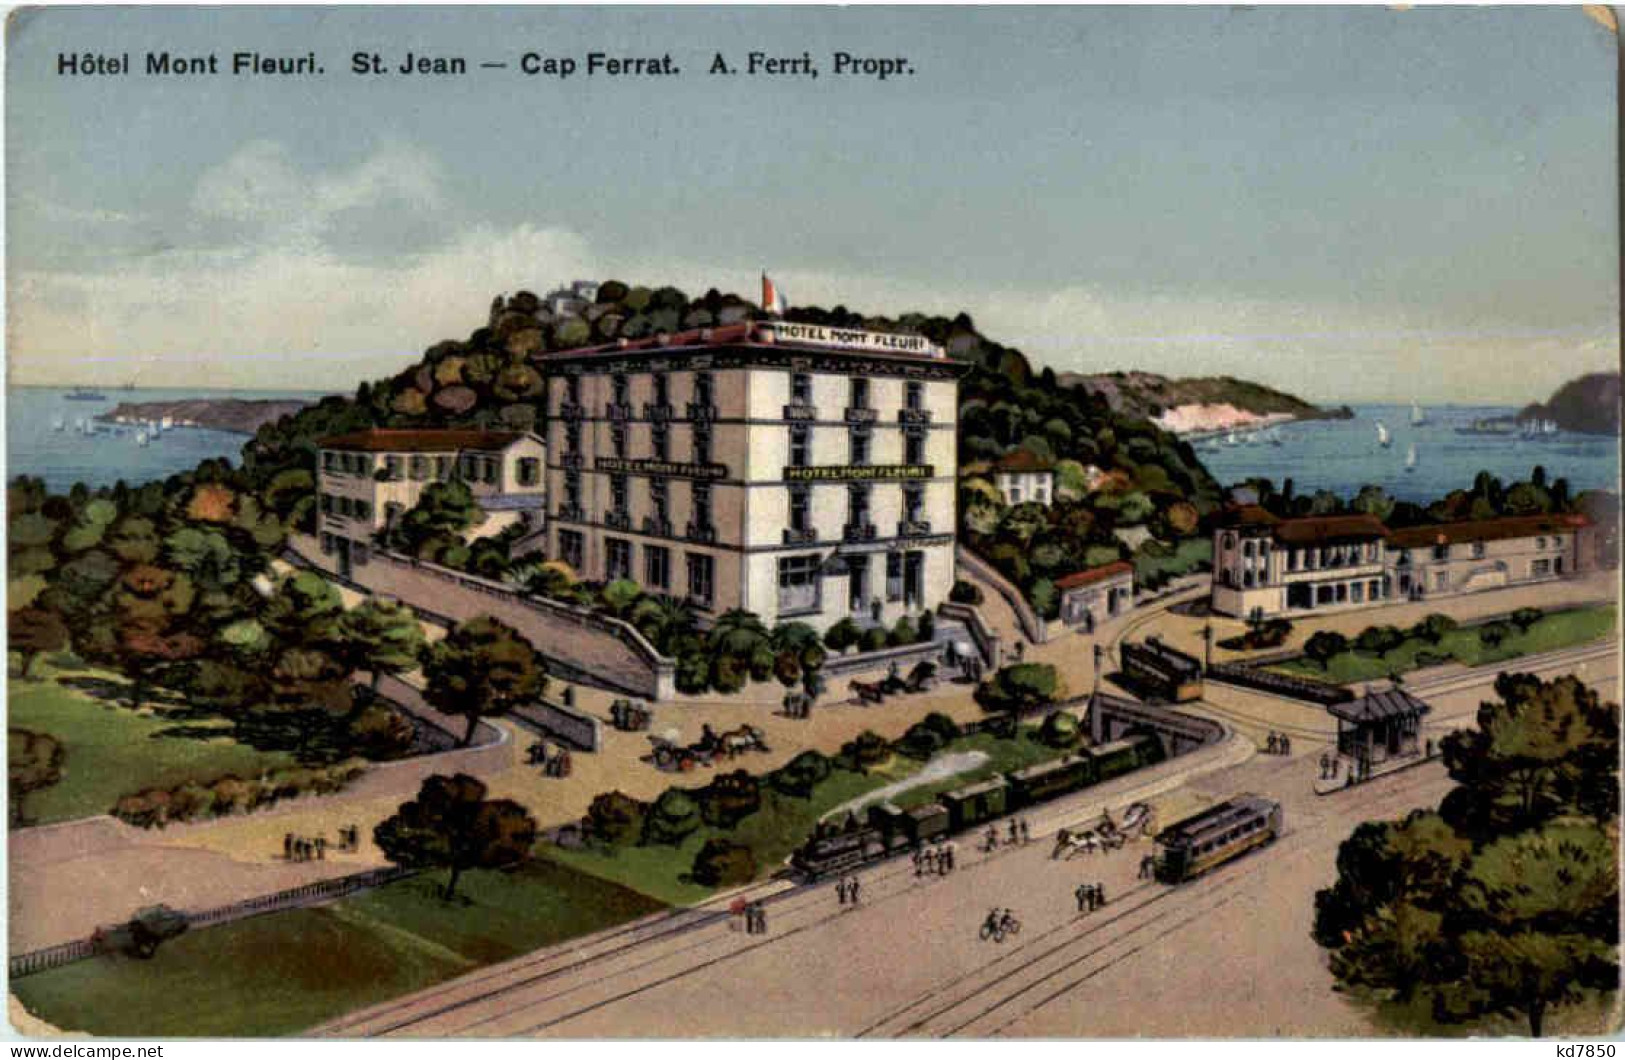 St. Jean - Cap Ferat - Hotel Mont Fleuri - Saint-Jean-Cap-Ferrat